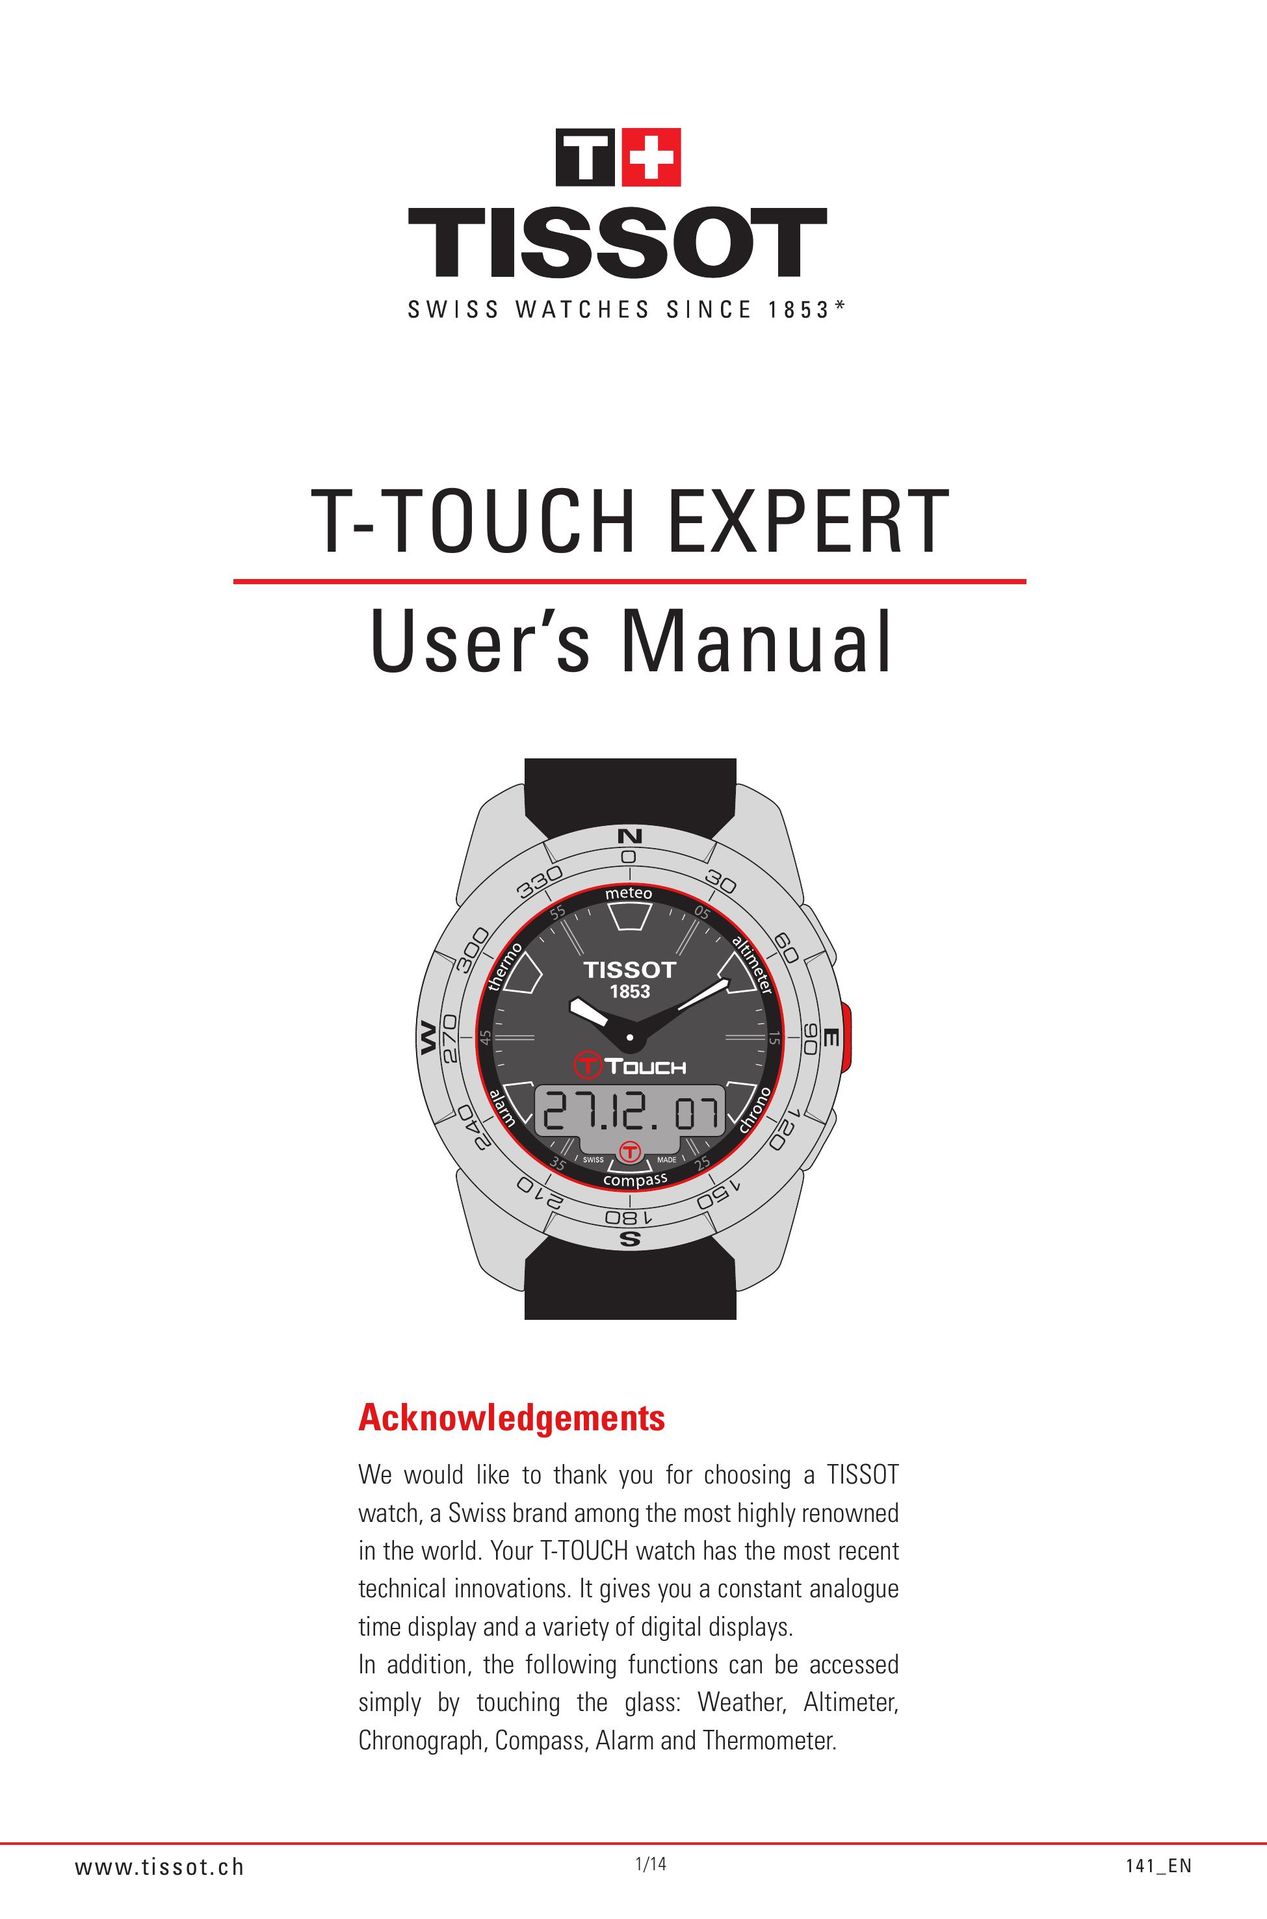 Tissot 141_EN5/14 Watch User Manual